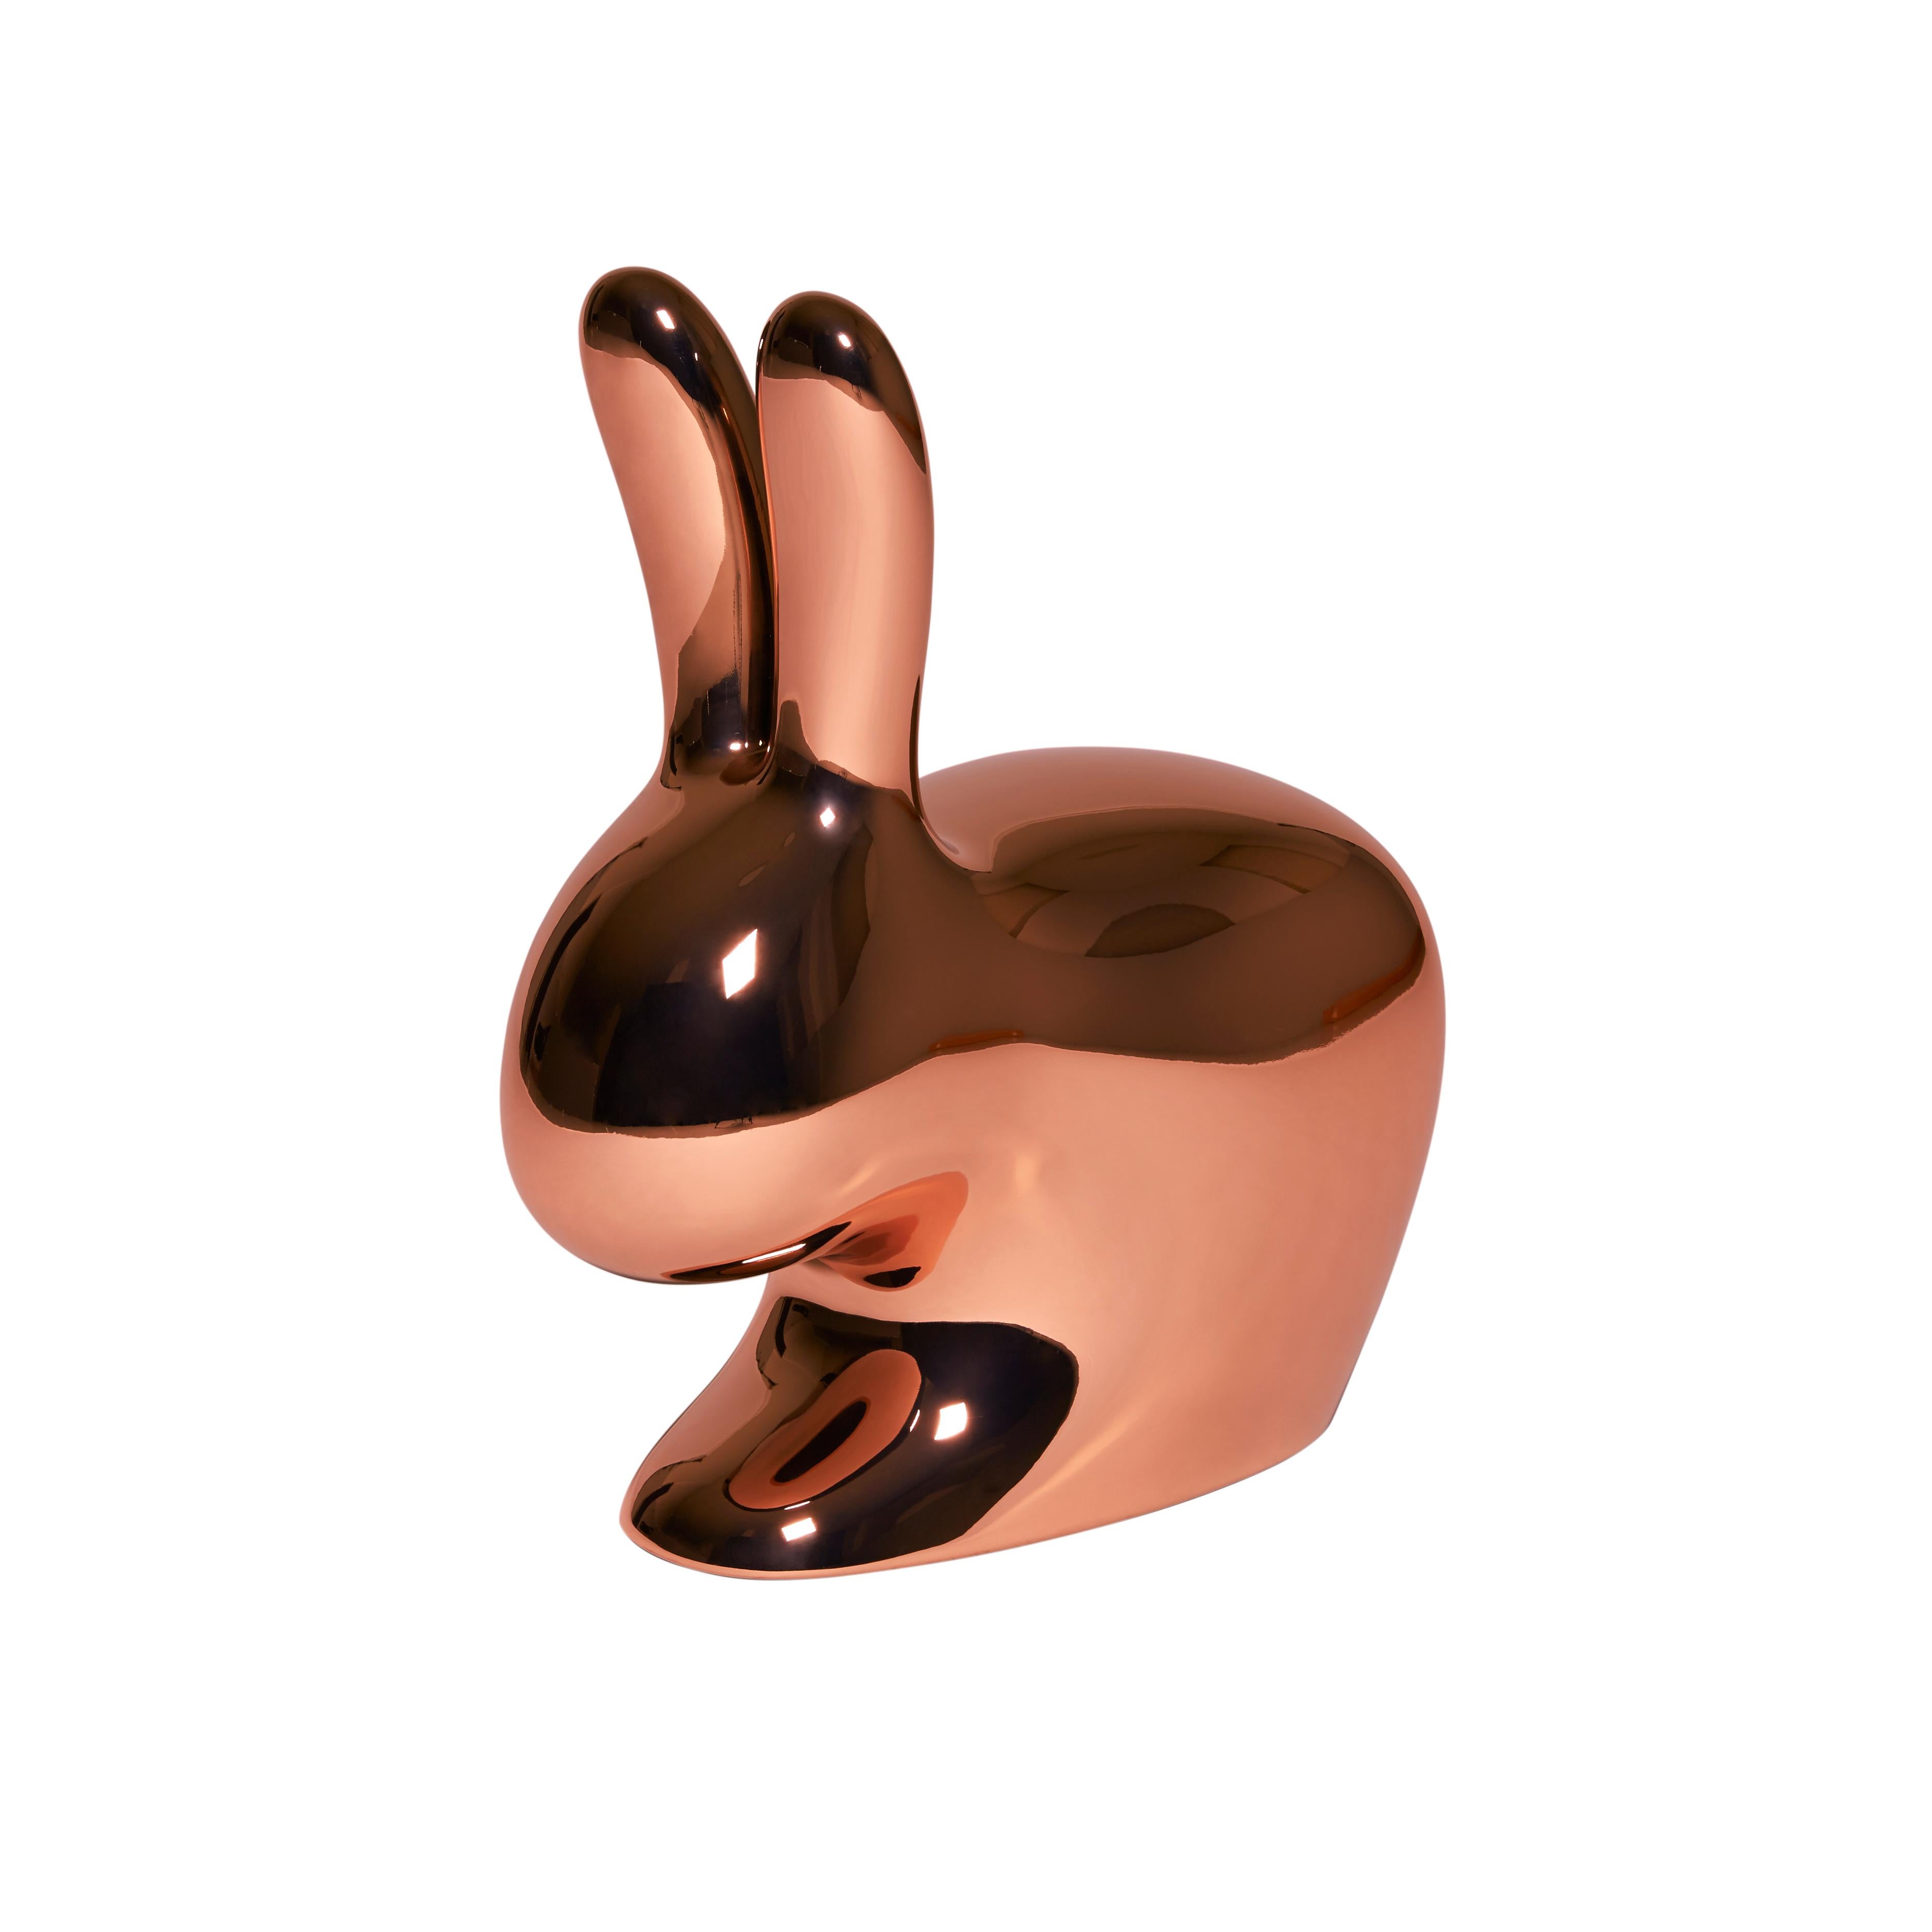 En vente : Pink (Copper) Chaise lapin décorative et sculpturale moderne à finition métallique